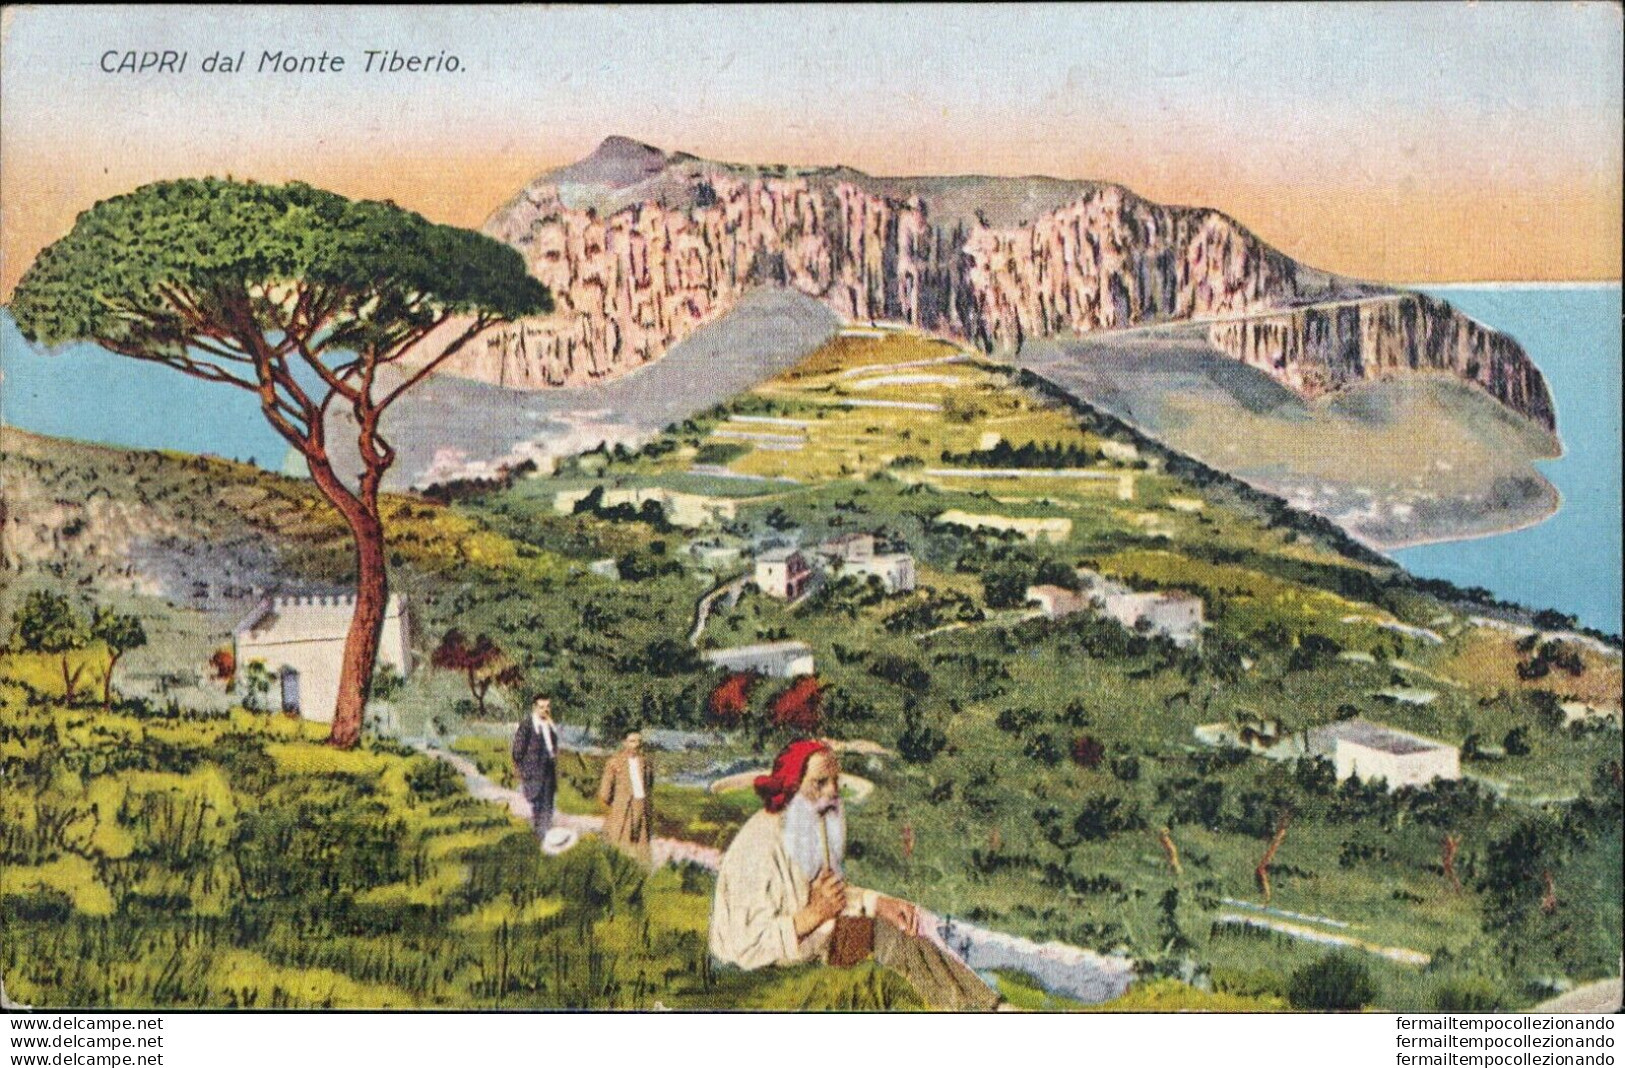 At571 Cartolina Capri Dal Monte Tiberio  Provincia Di Napoli - Napoli